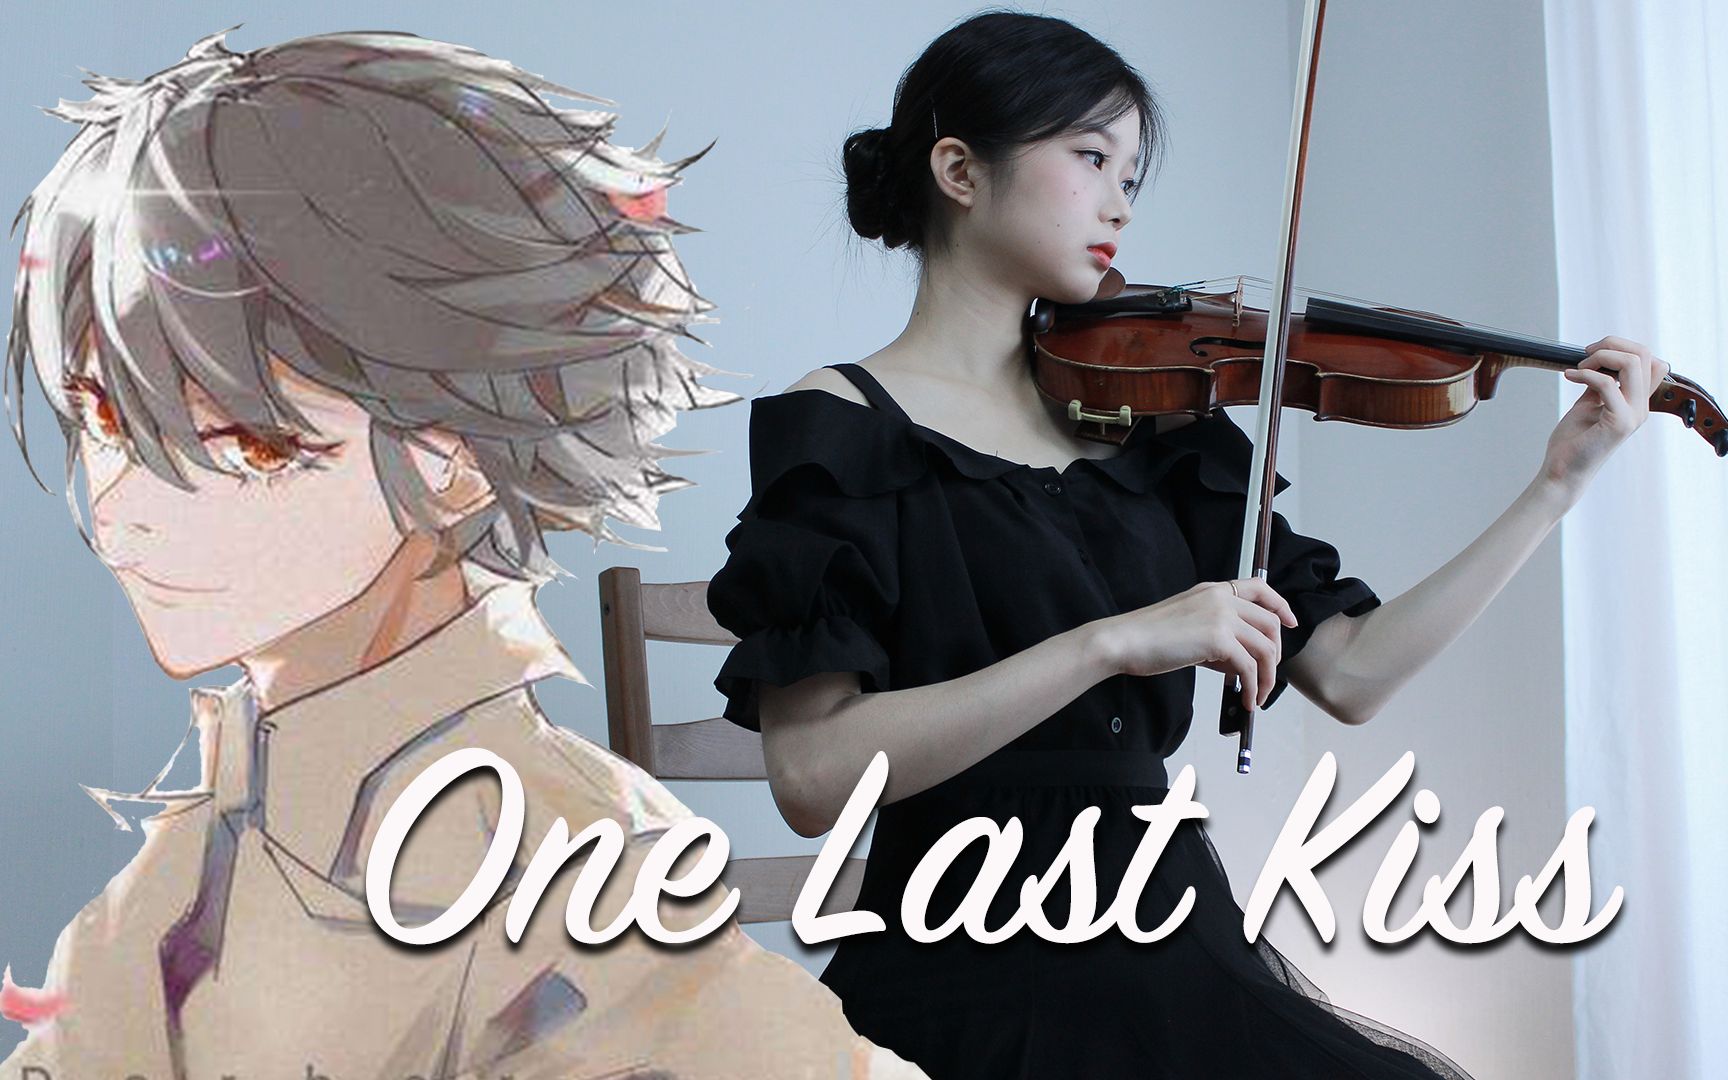 小提琴演奏《One last kiss》，感谢你曾来过我的世界！